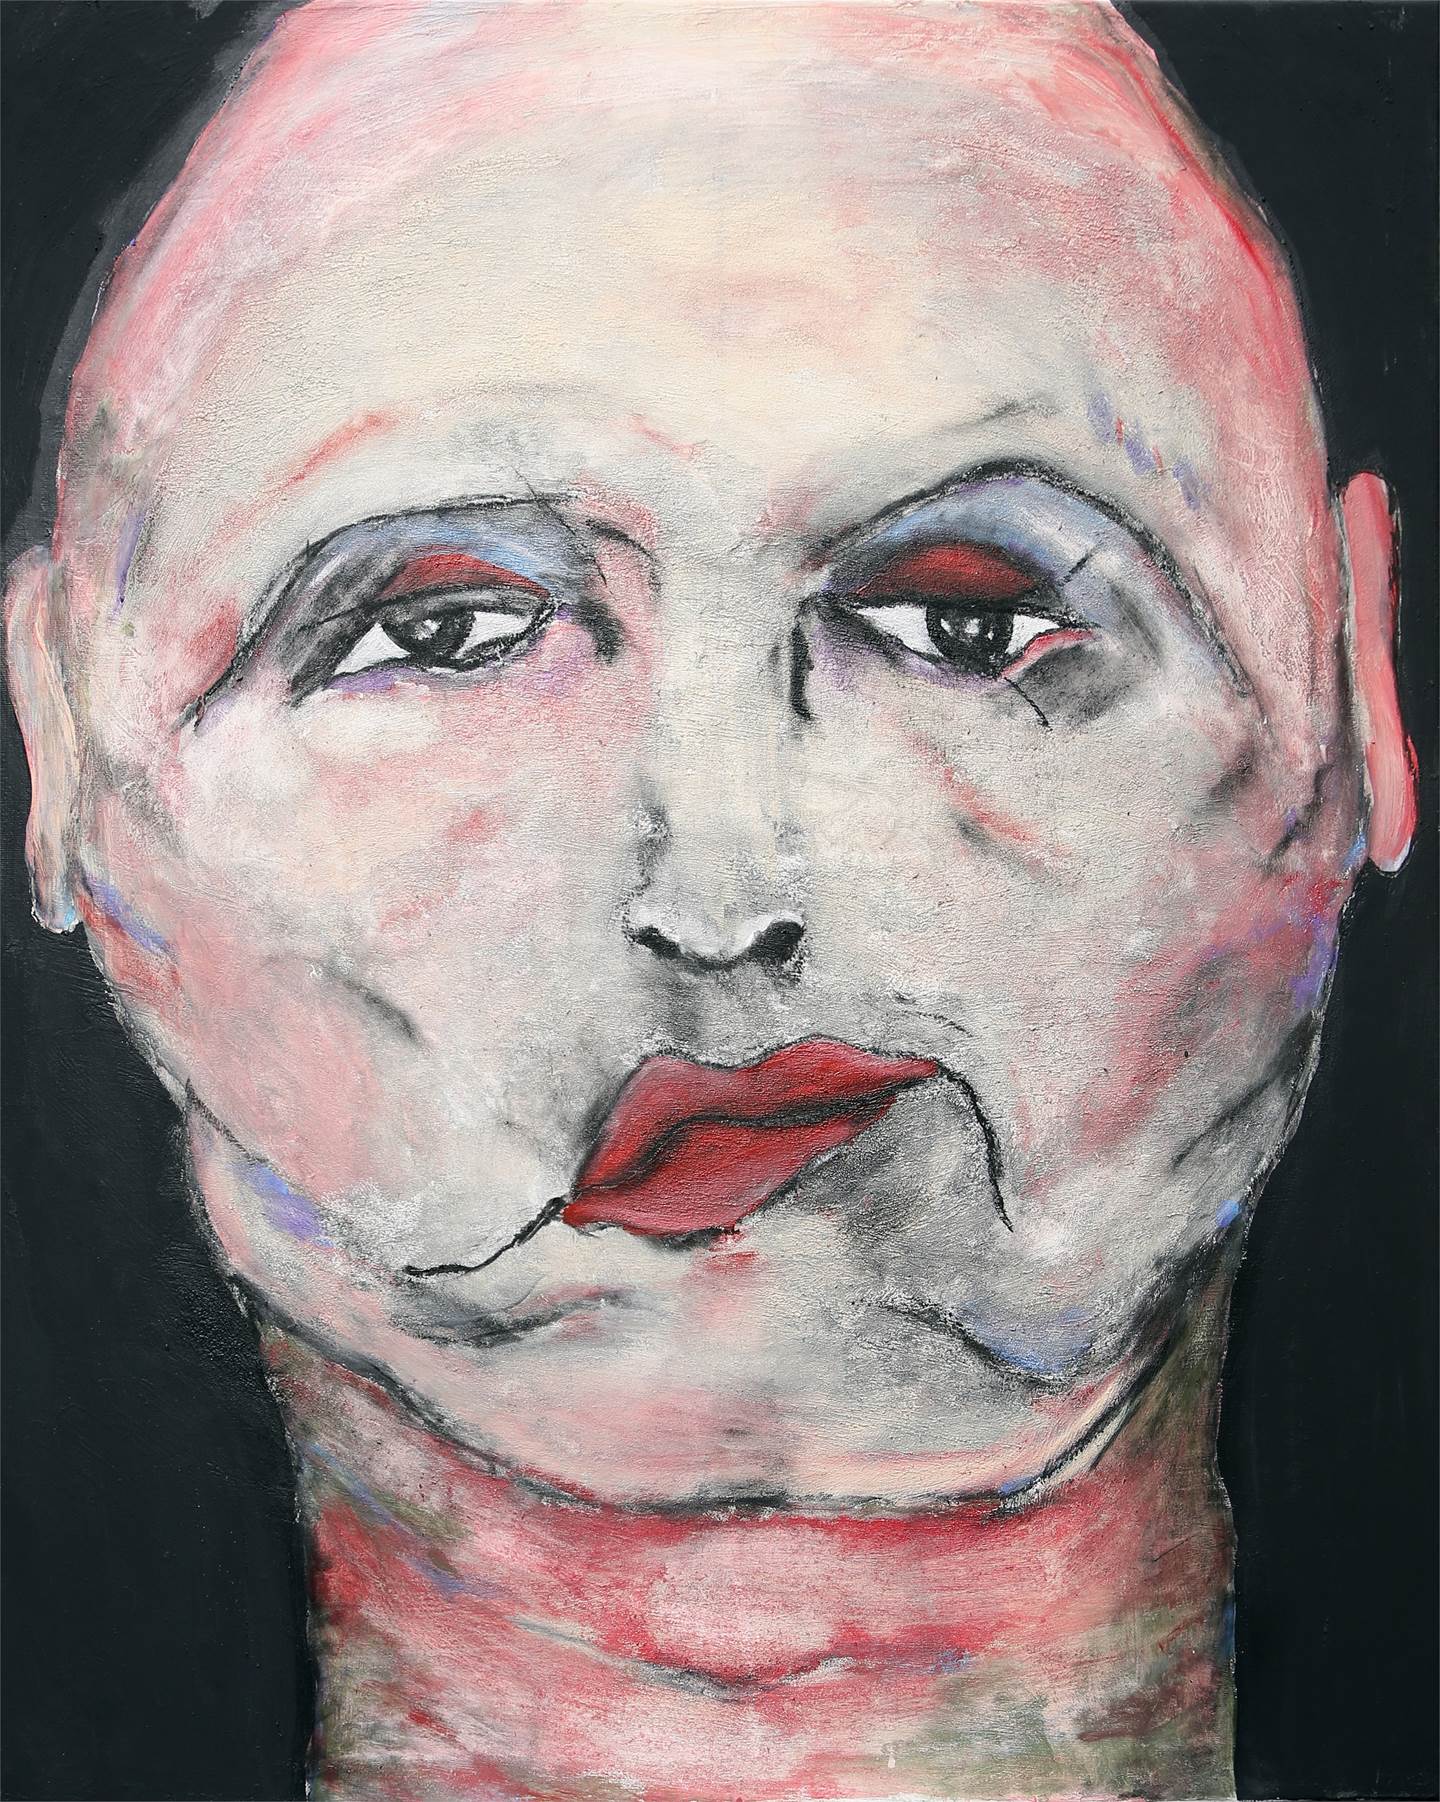 The actor (The avid melancholy), original Figure humaine Technique mixte La peinture par Pedro Martinez Marín